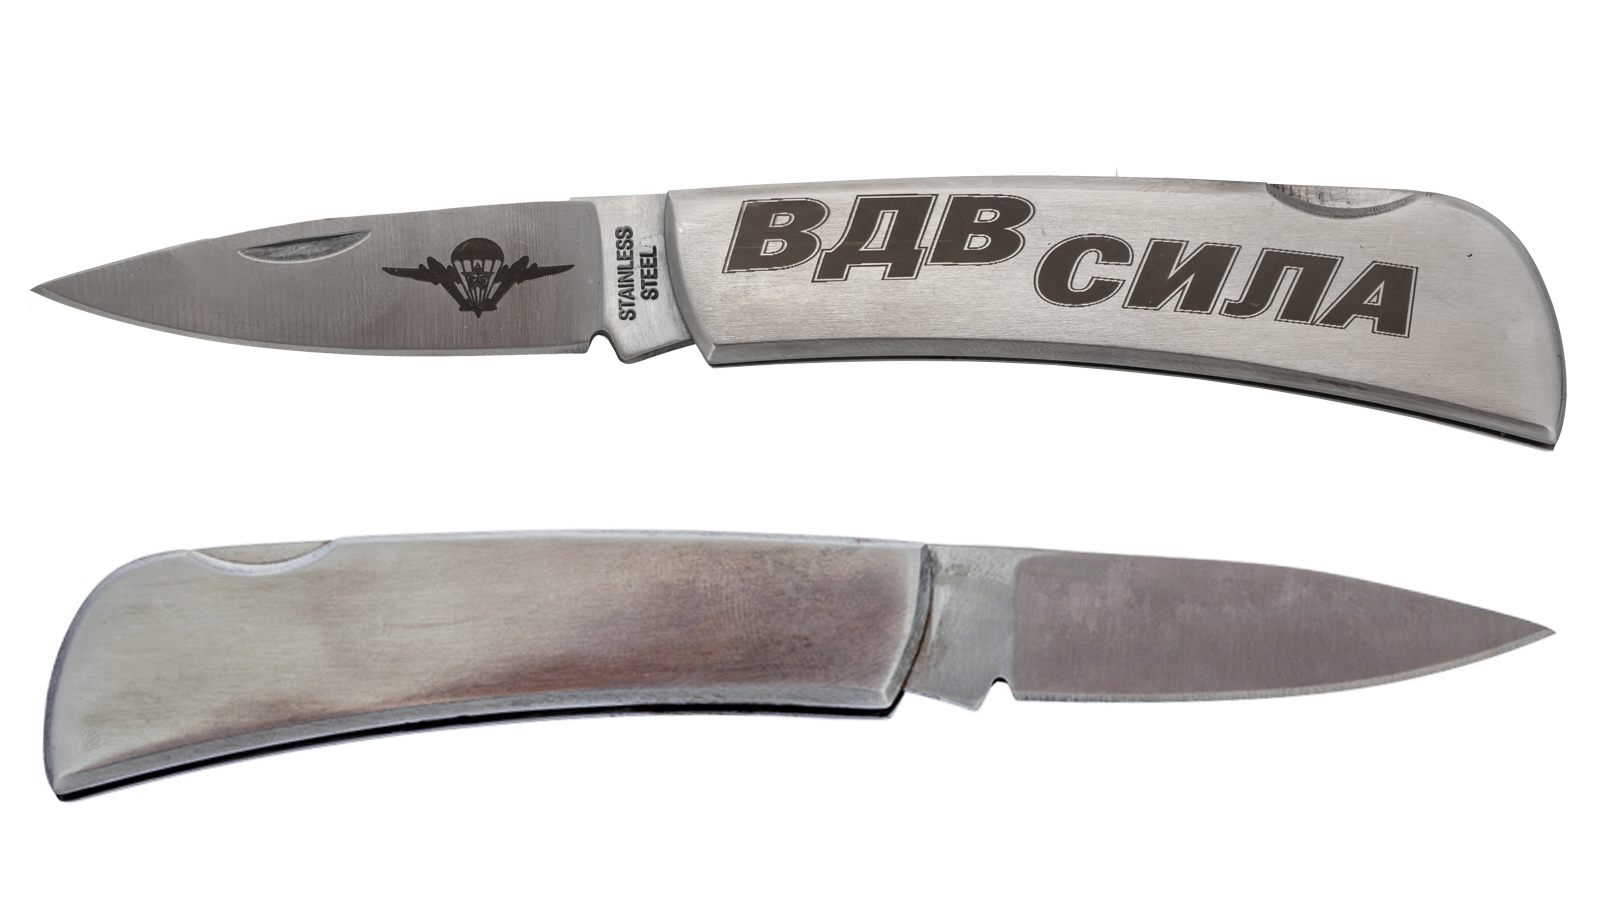 Коллекционный складной нож с гравировкой "ВДВ - СИЛА" от военторга Военпро